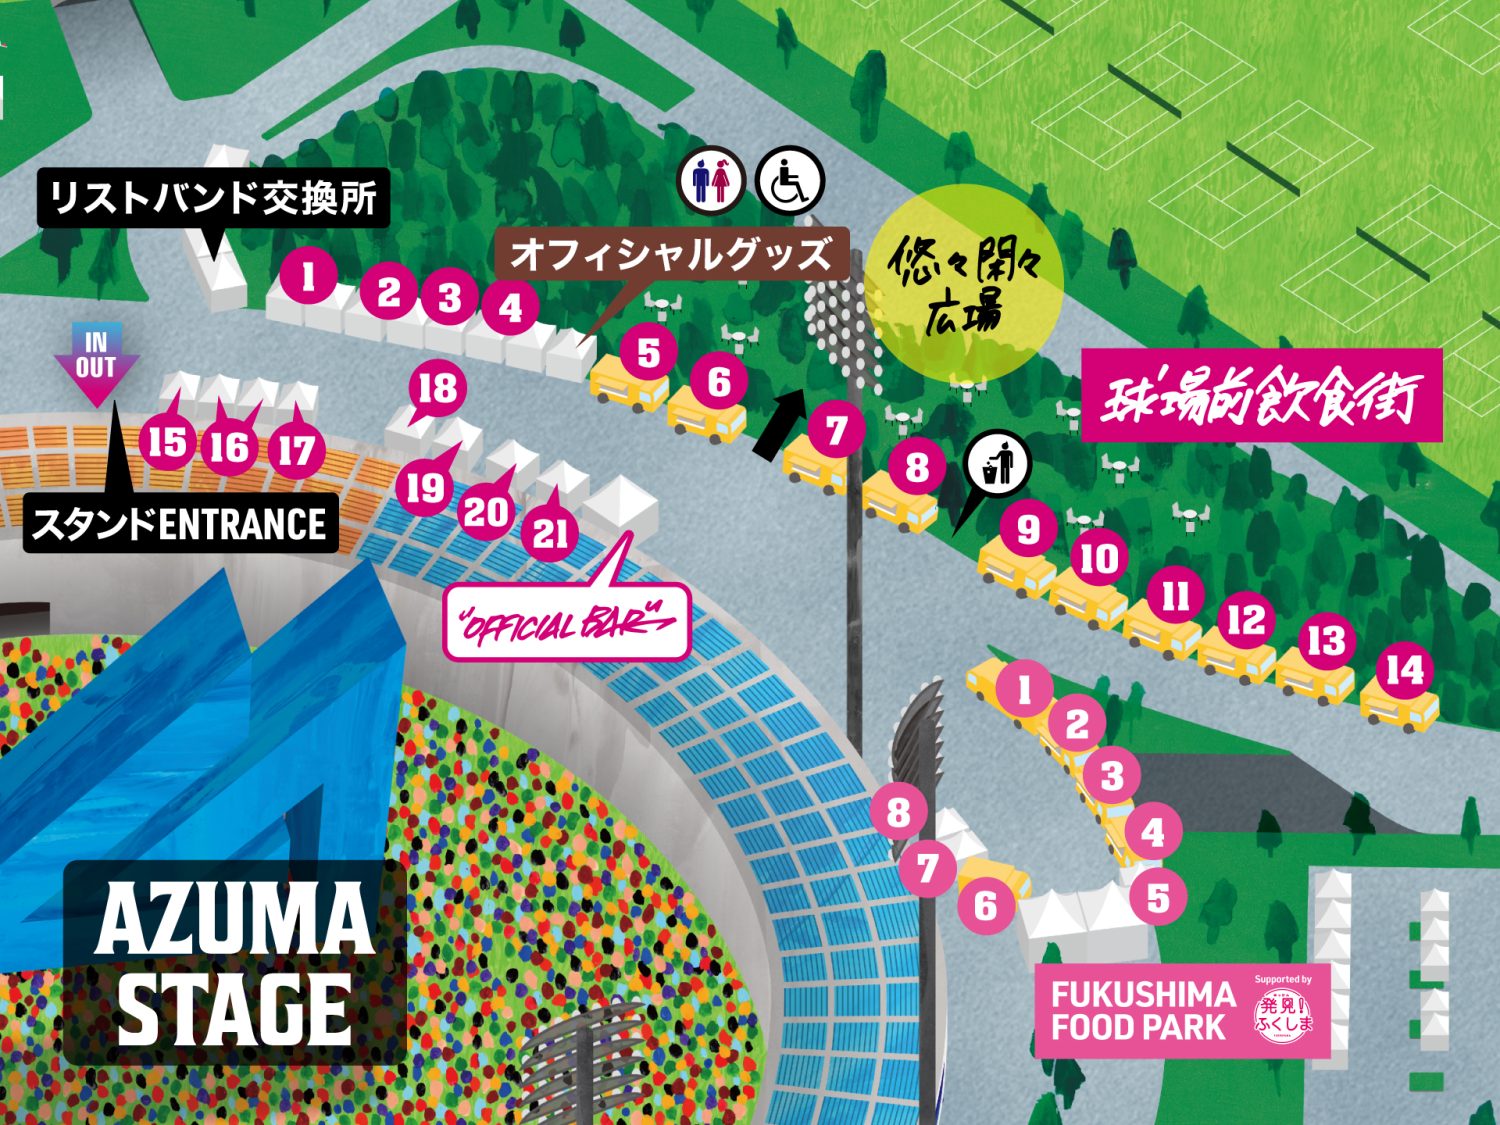 球場前飲食街 / FUKUSHIMA FOOD PARK  Map